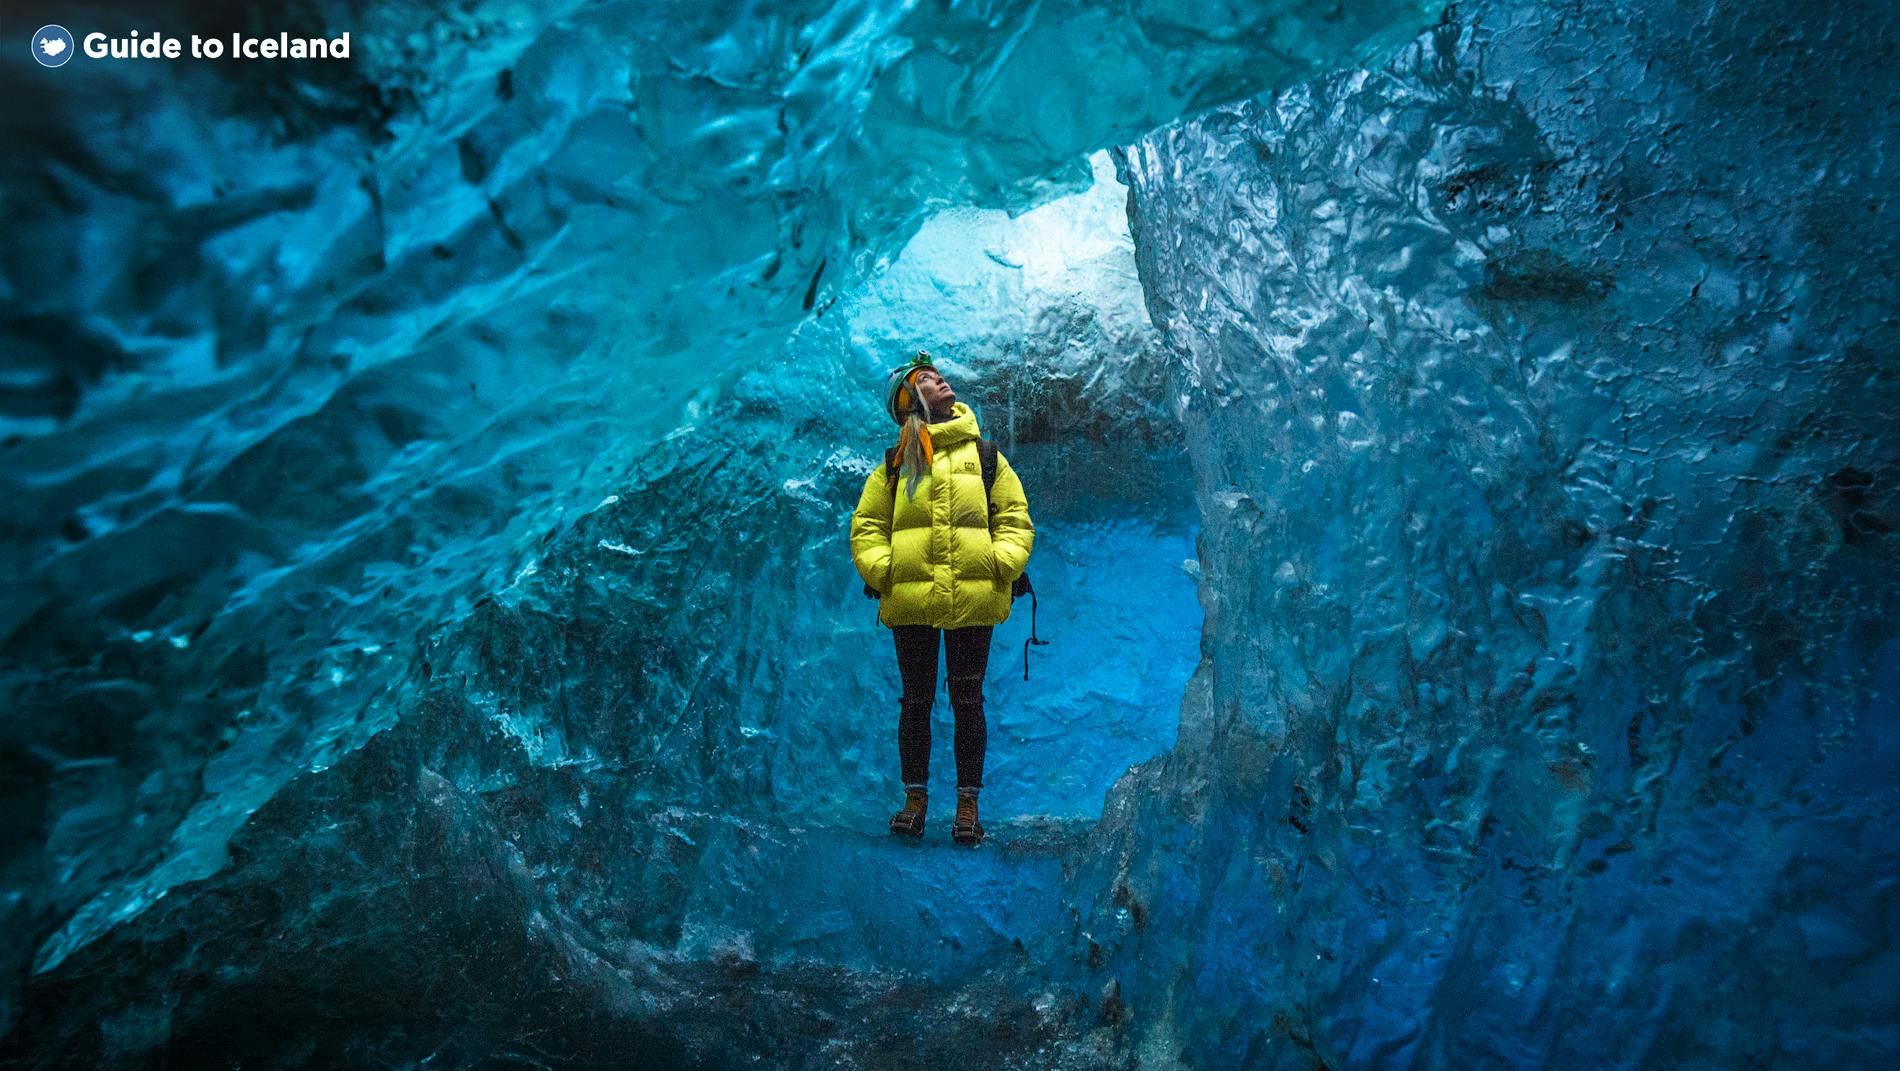 Zwiedzanie niebieskiej jaskini lodowcowej jest obowiązkowym punktem podczas zimowej podróży po Islandii.